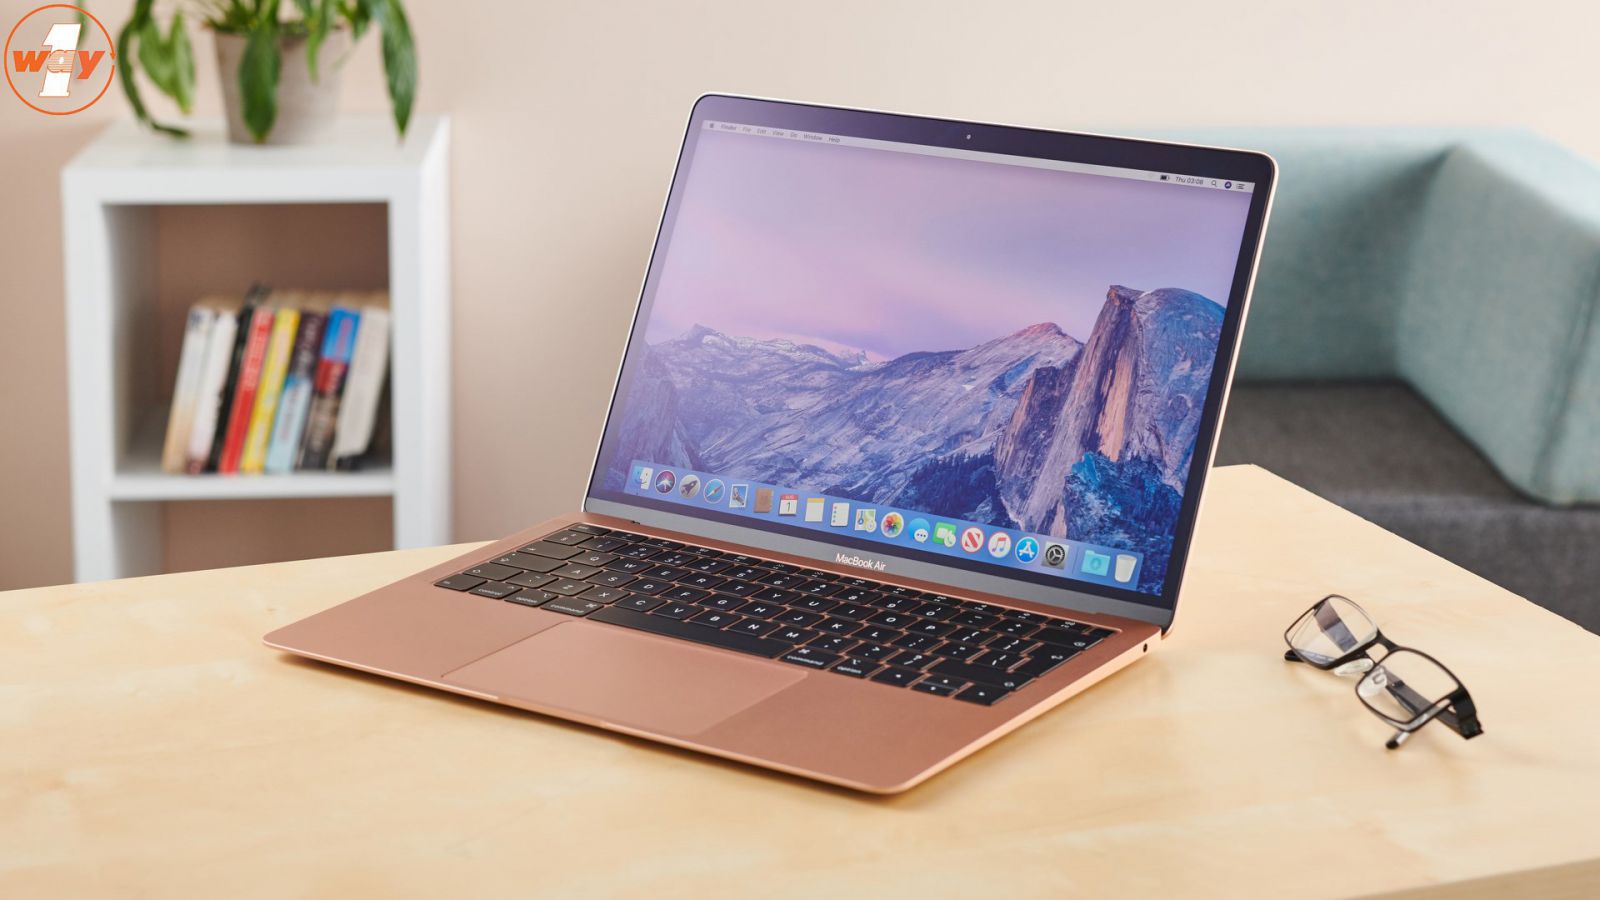 MacBook Air 2019 MVFM2 cho khả năng tái tạo màu cực chuẩn xác